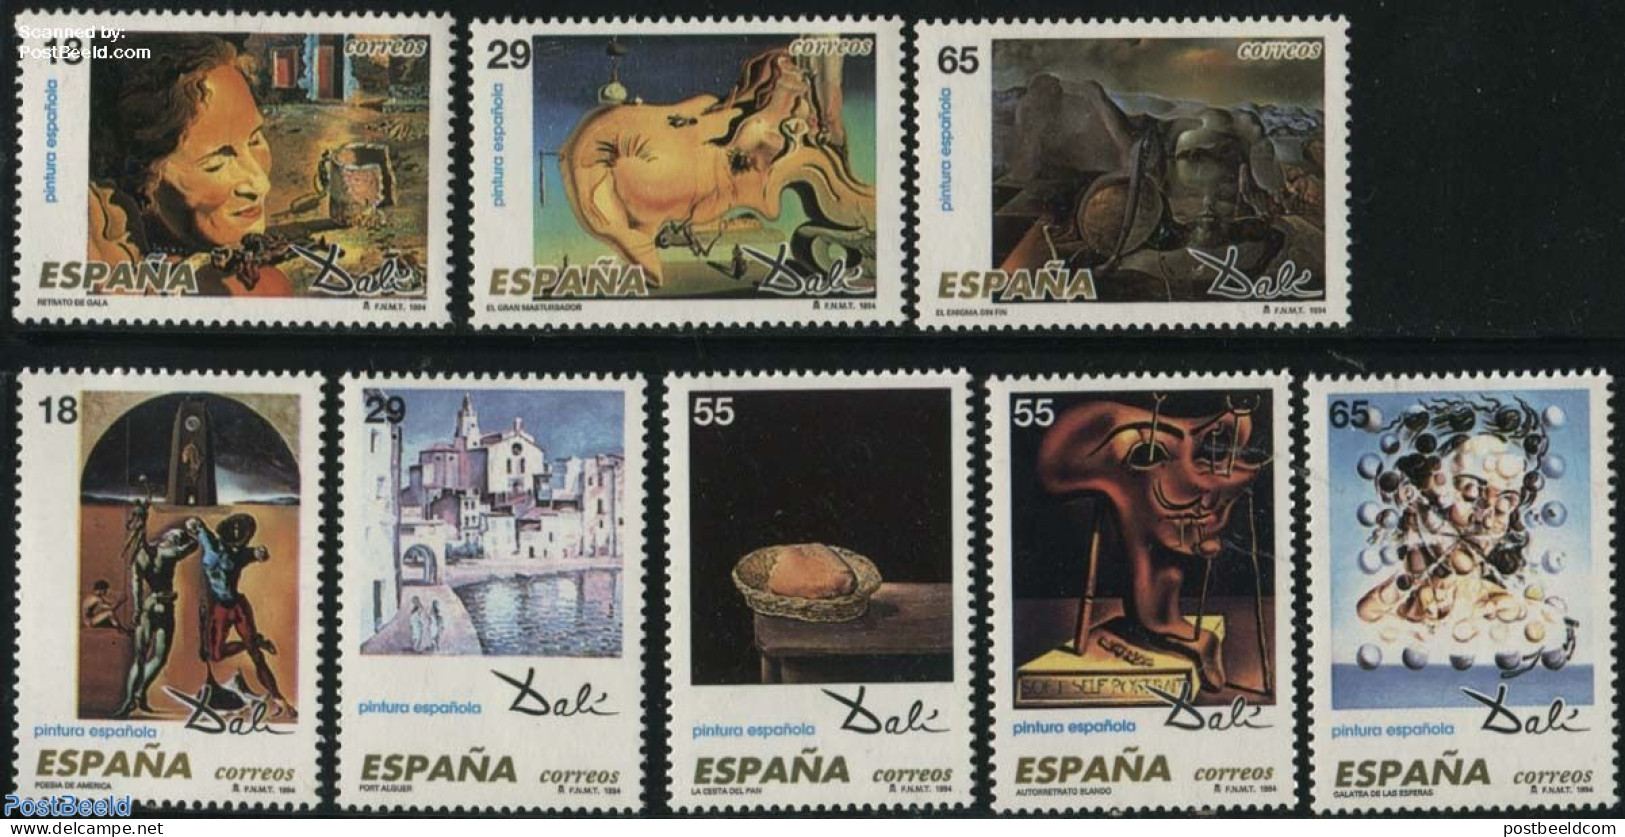 Spain 1994 Salvador Dali 8v, Mint NH, Art - Modern Art (1850-present) - Salvador Dali - Ongebruikt